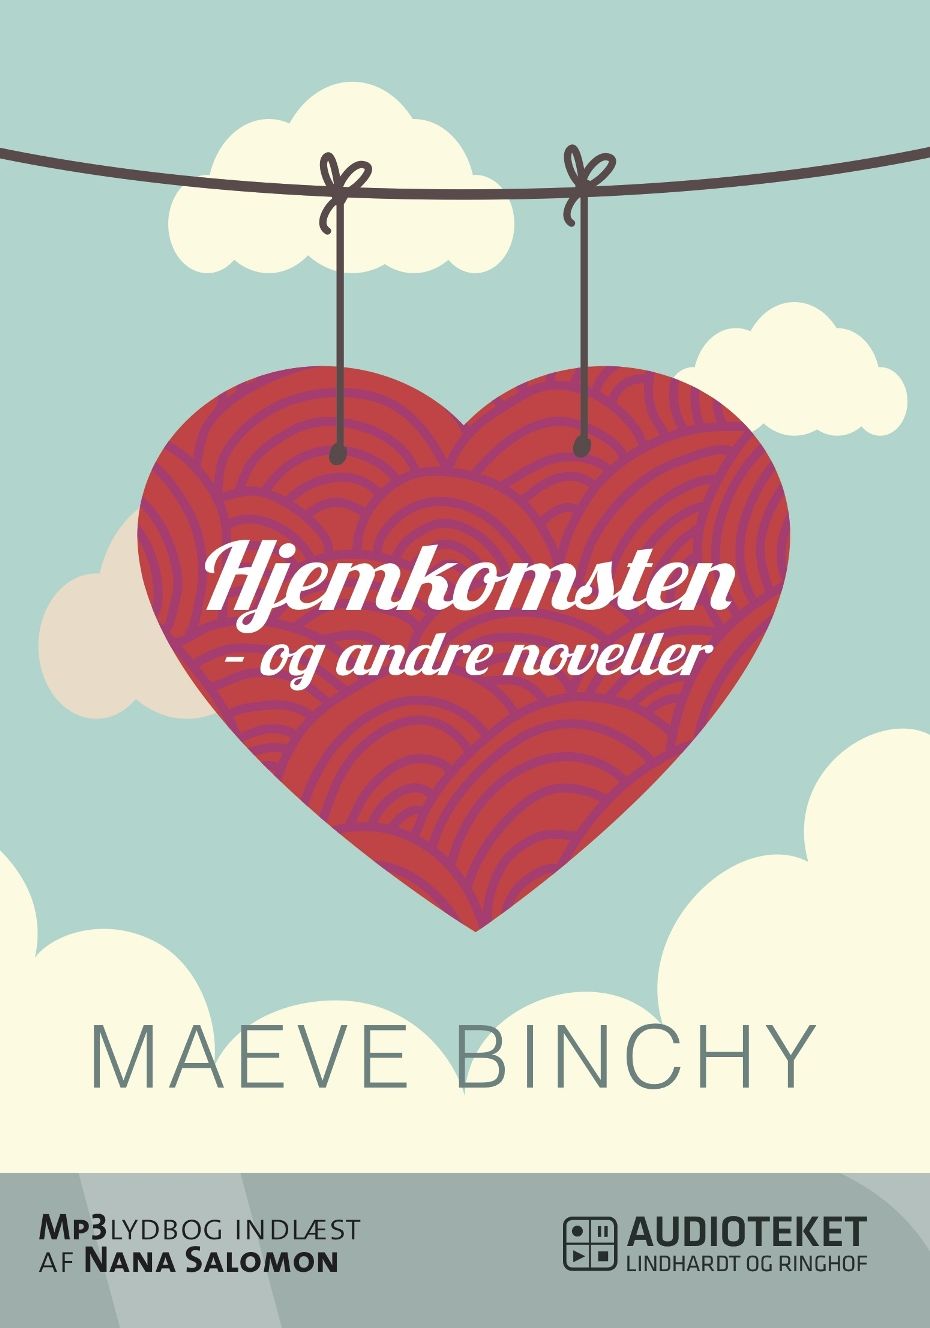 Hjemkomsten - og andre noveller, ljudbok av Maeve Binchy